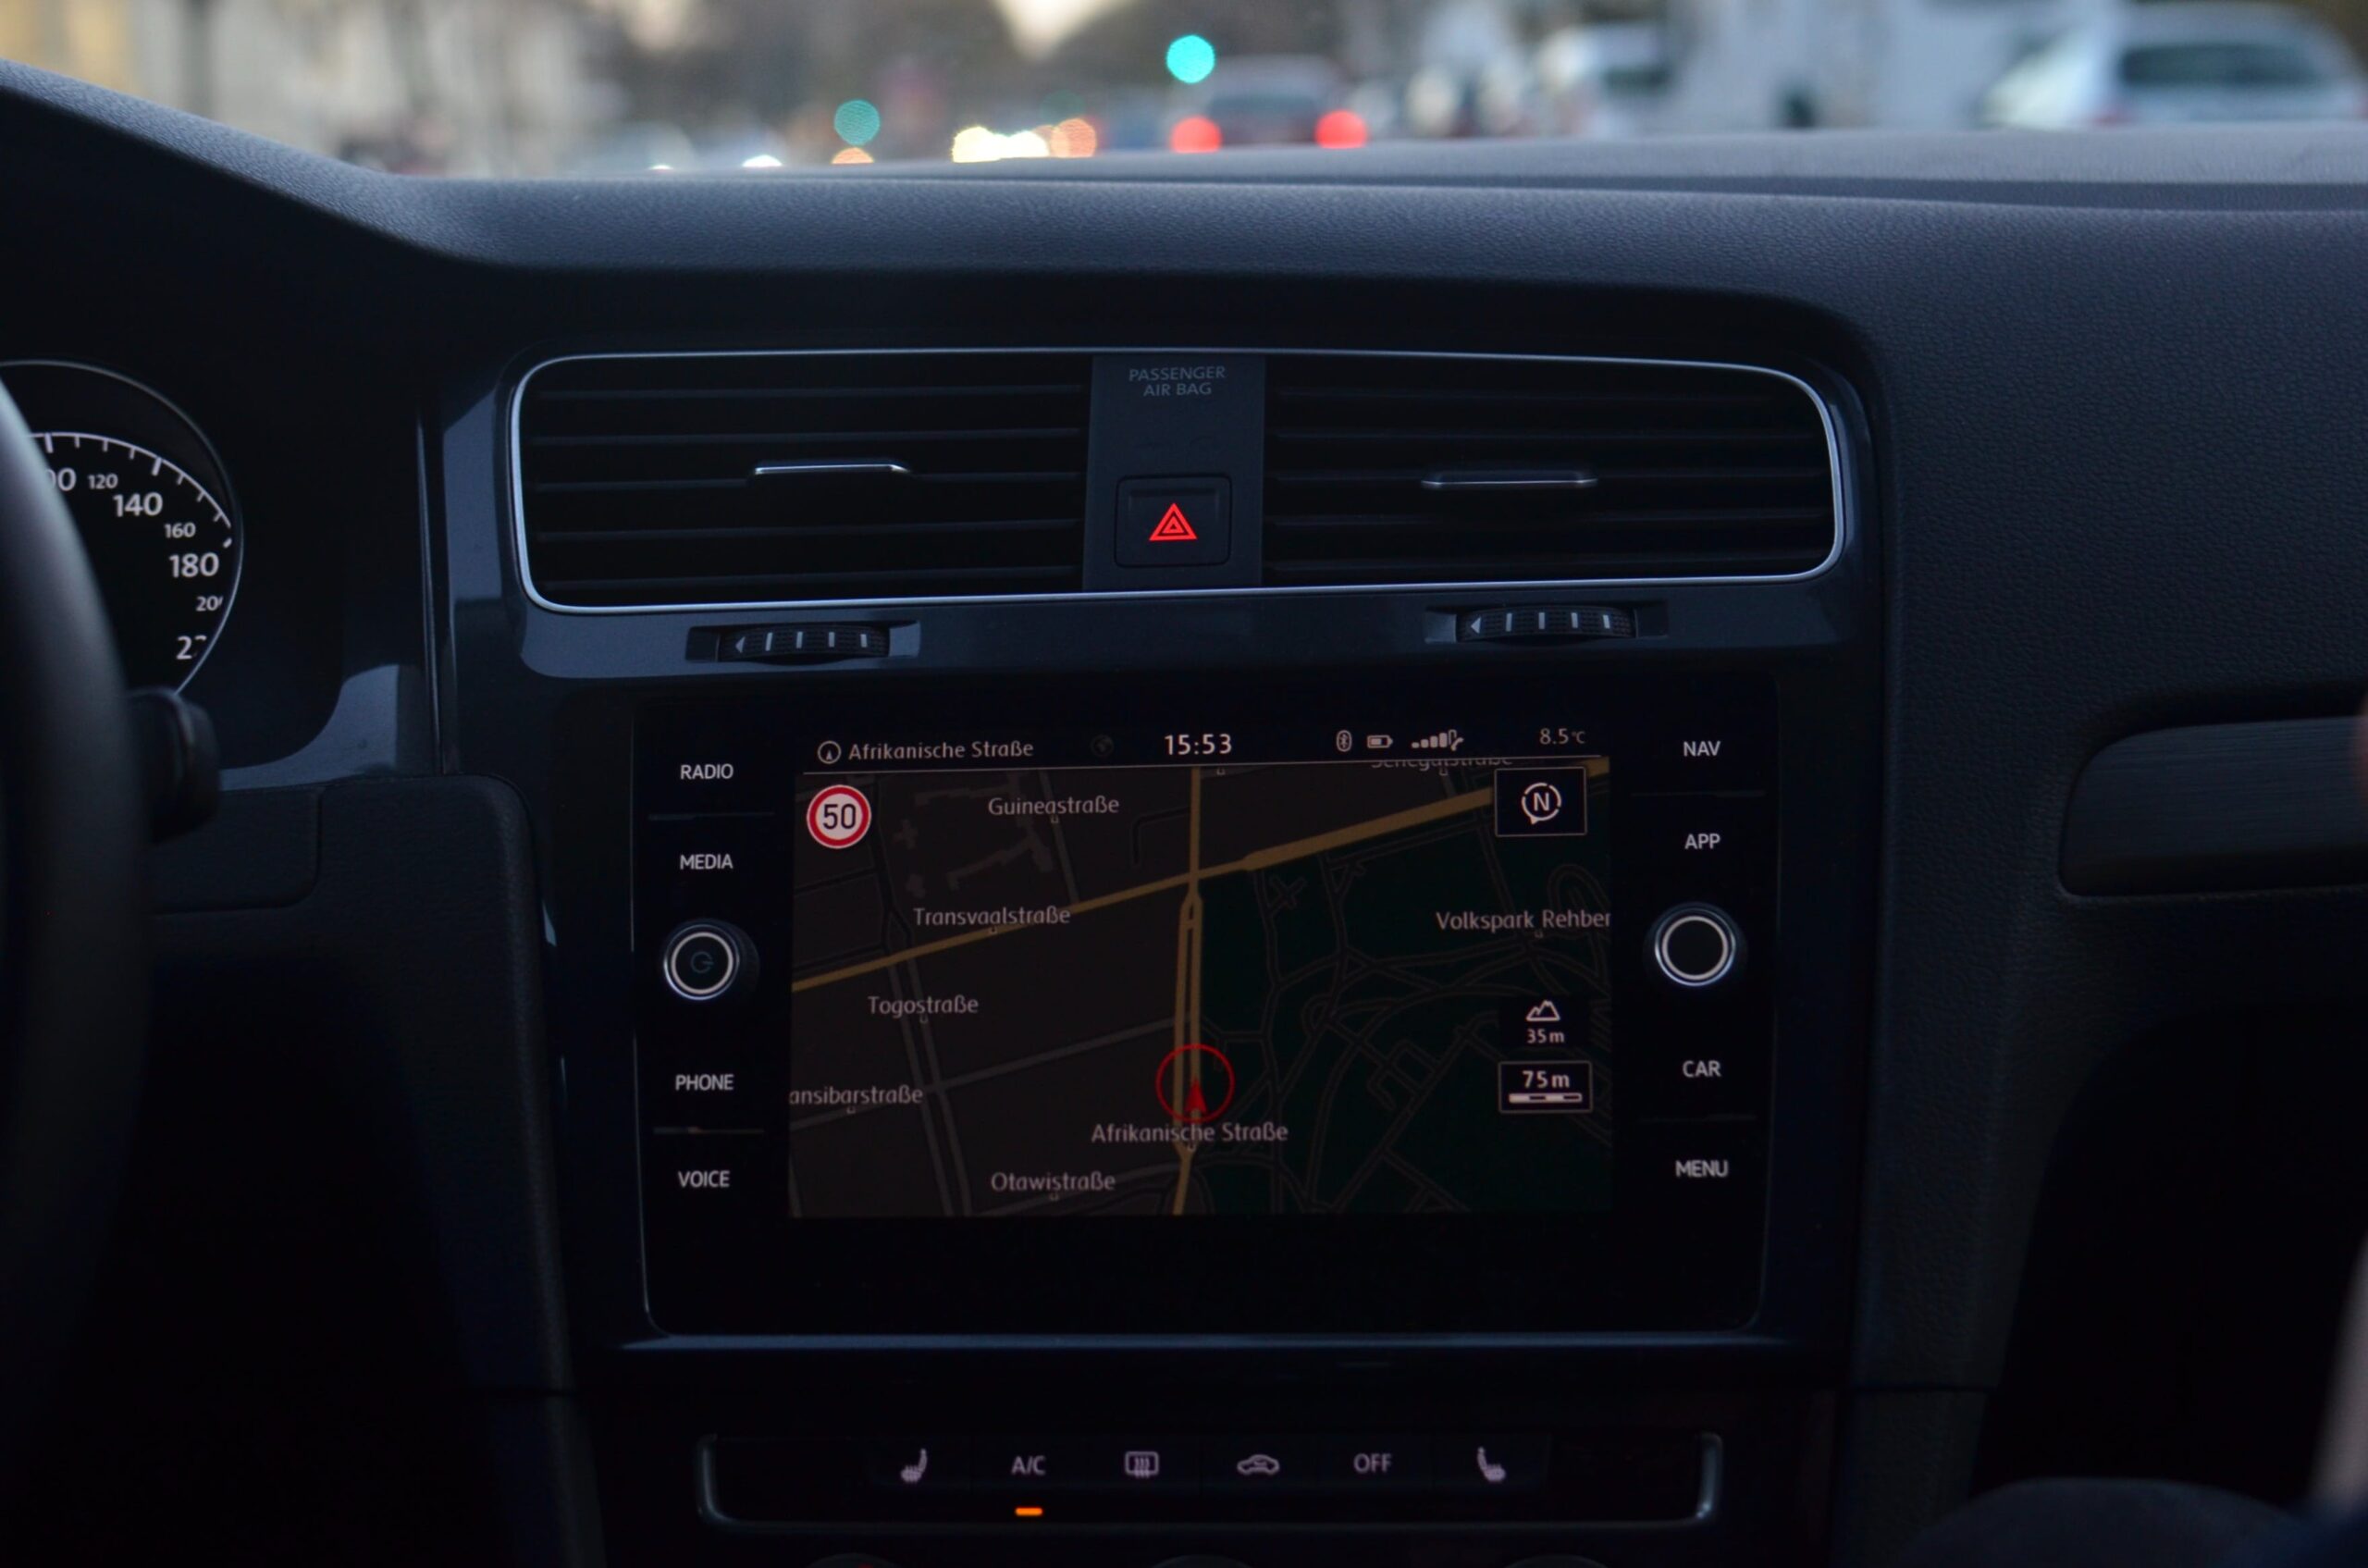 Come scegliere il miglior sistema di navigazione per la tua auto